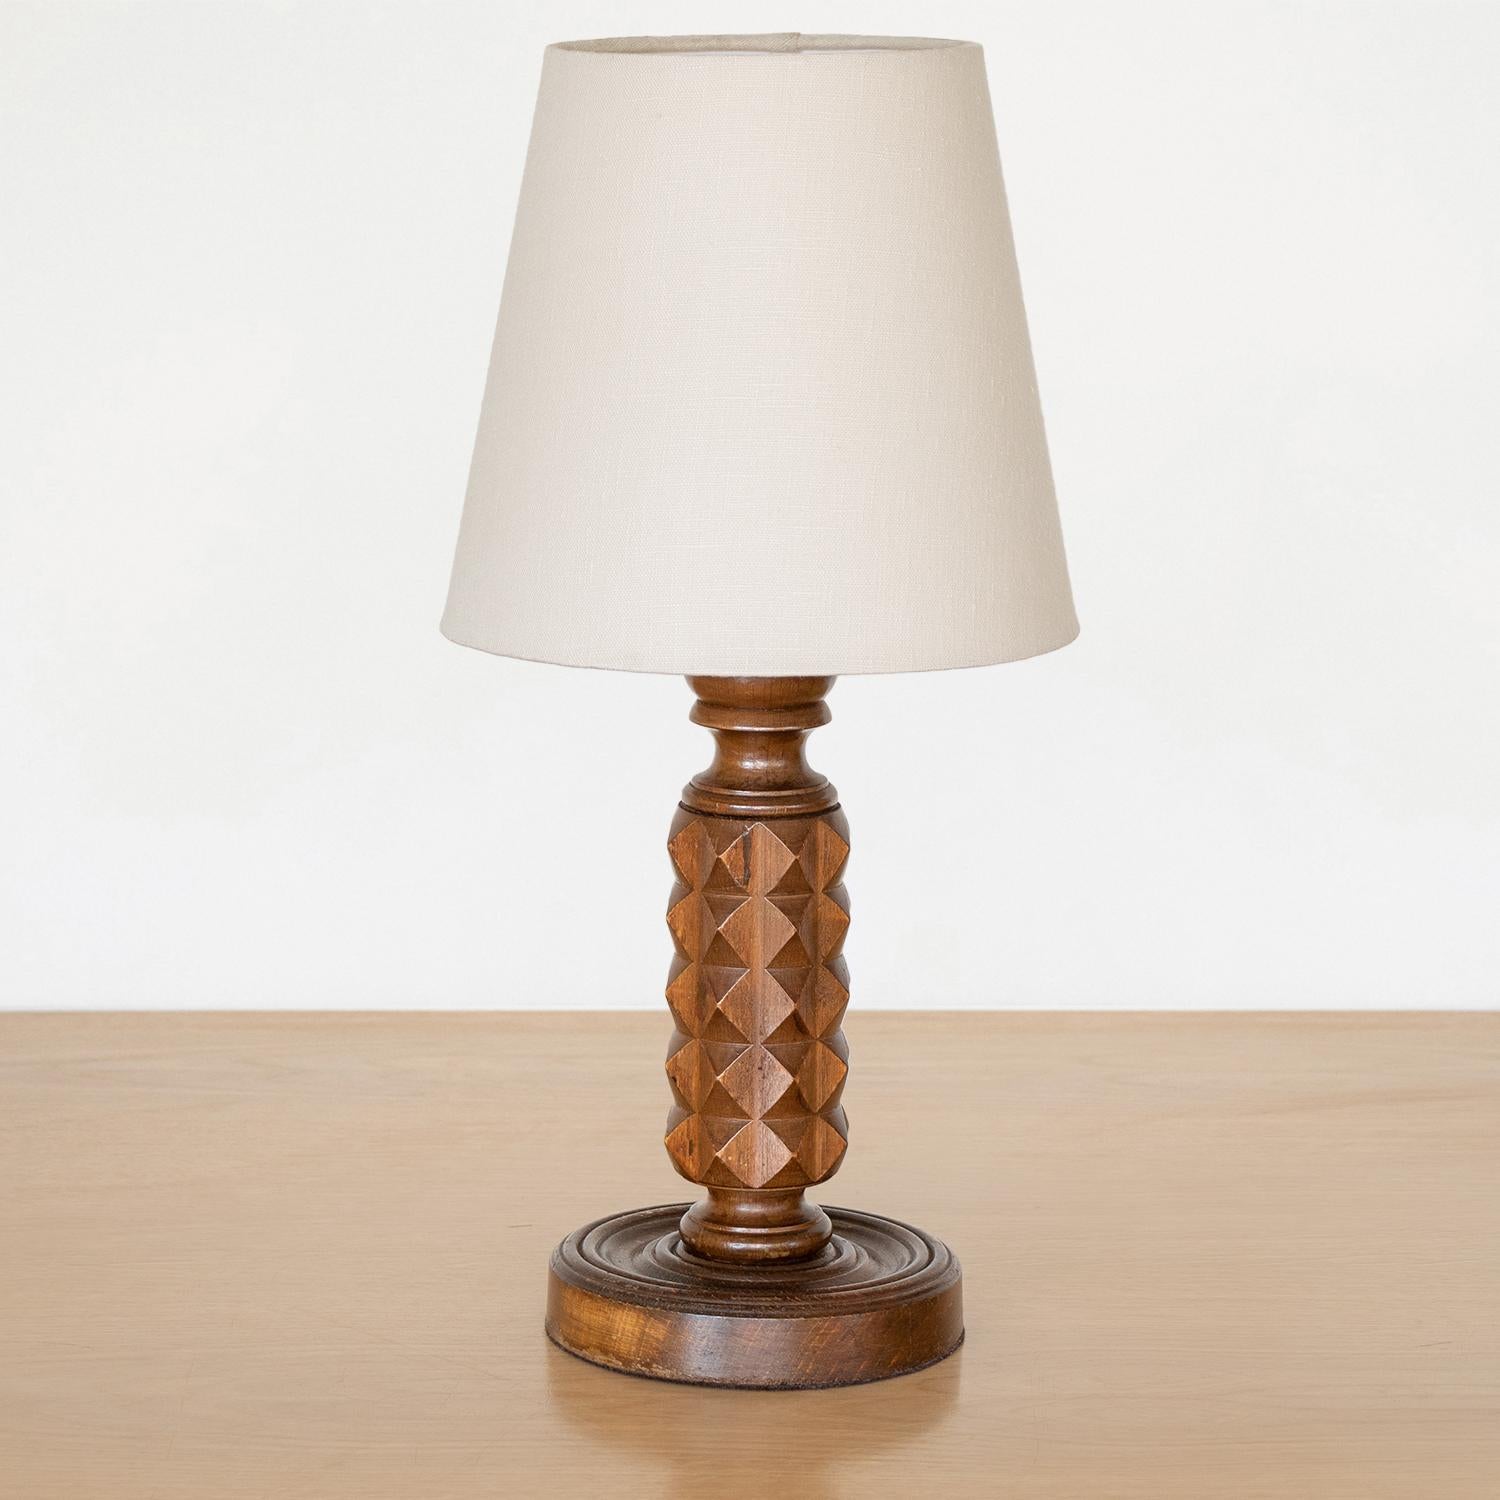 Lampe de table en bois sculpté, France, années 1940. Magnifique motif de chevron sculpté sur la tige avec finition en bois foncé d'origine. Nouveaux abat-jour en lin ivoire et câblage refait à neuf. Fonctionne avec une ampoule à culot E12 de 40 W ou